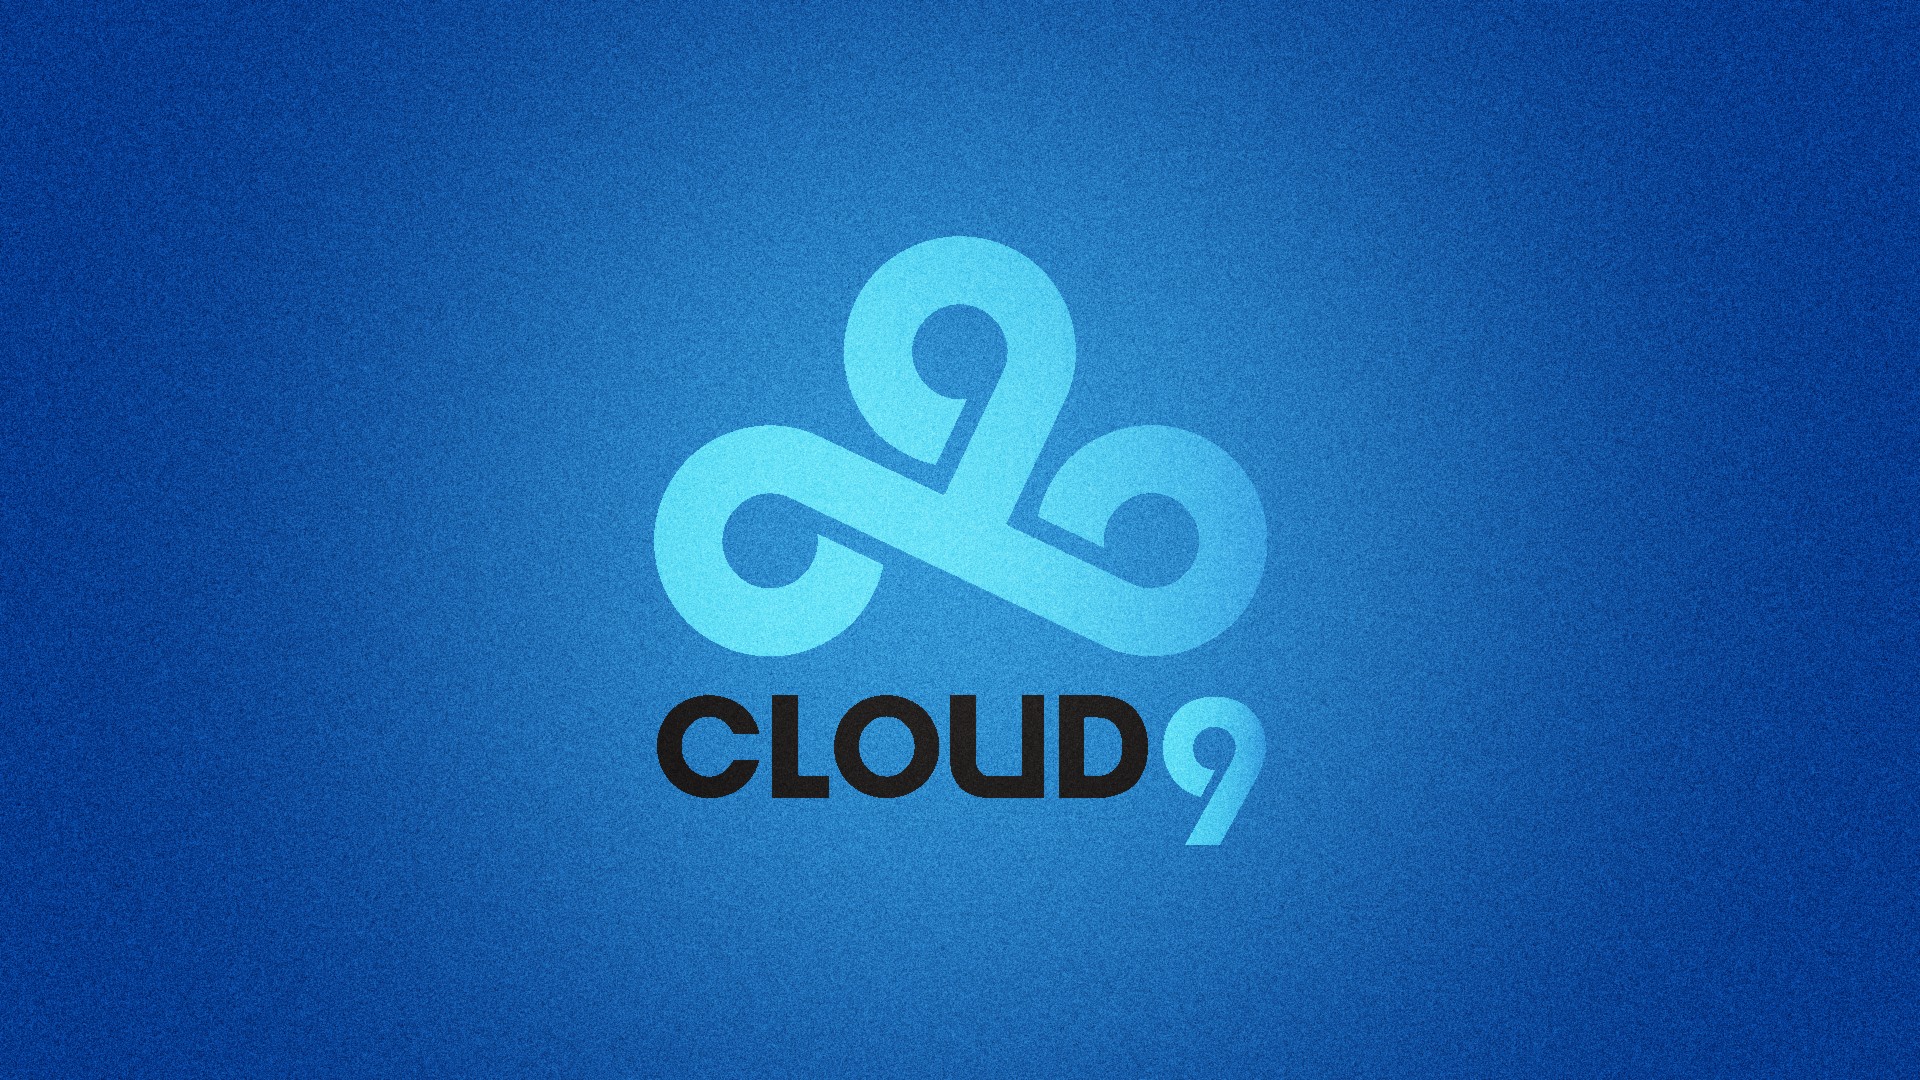 cloud 9 fond d'écran 1920x1080,bleu,police de caractère,texte,ciel,graphique